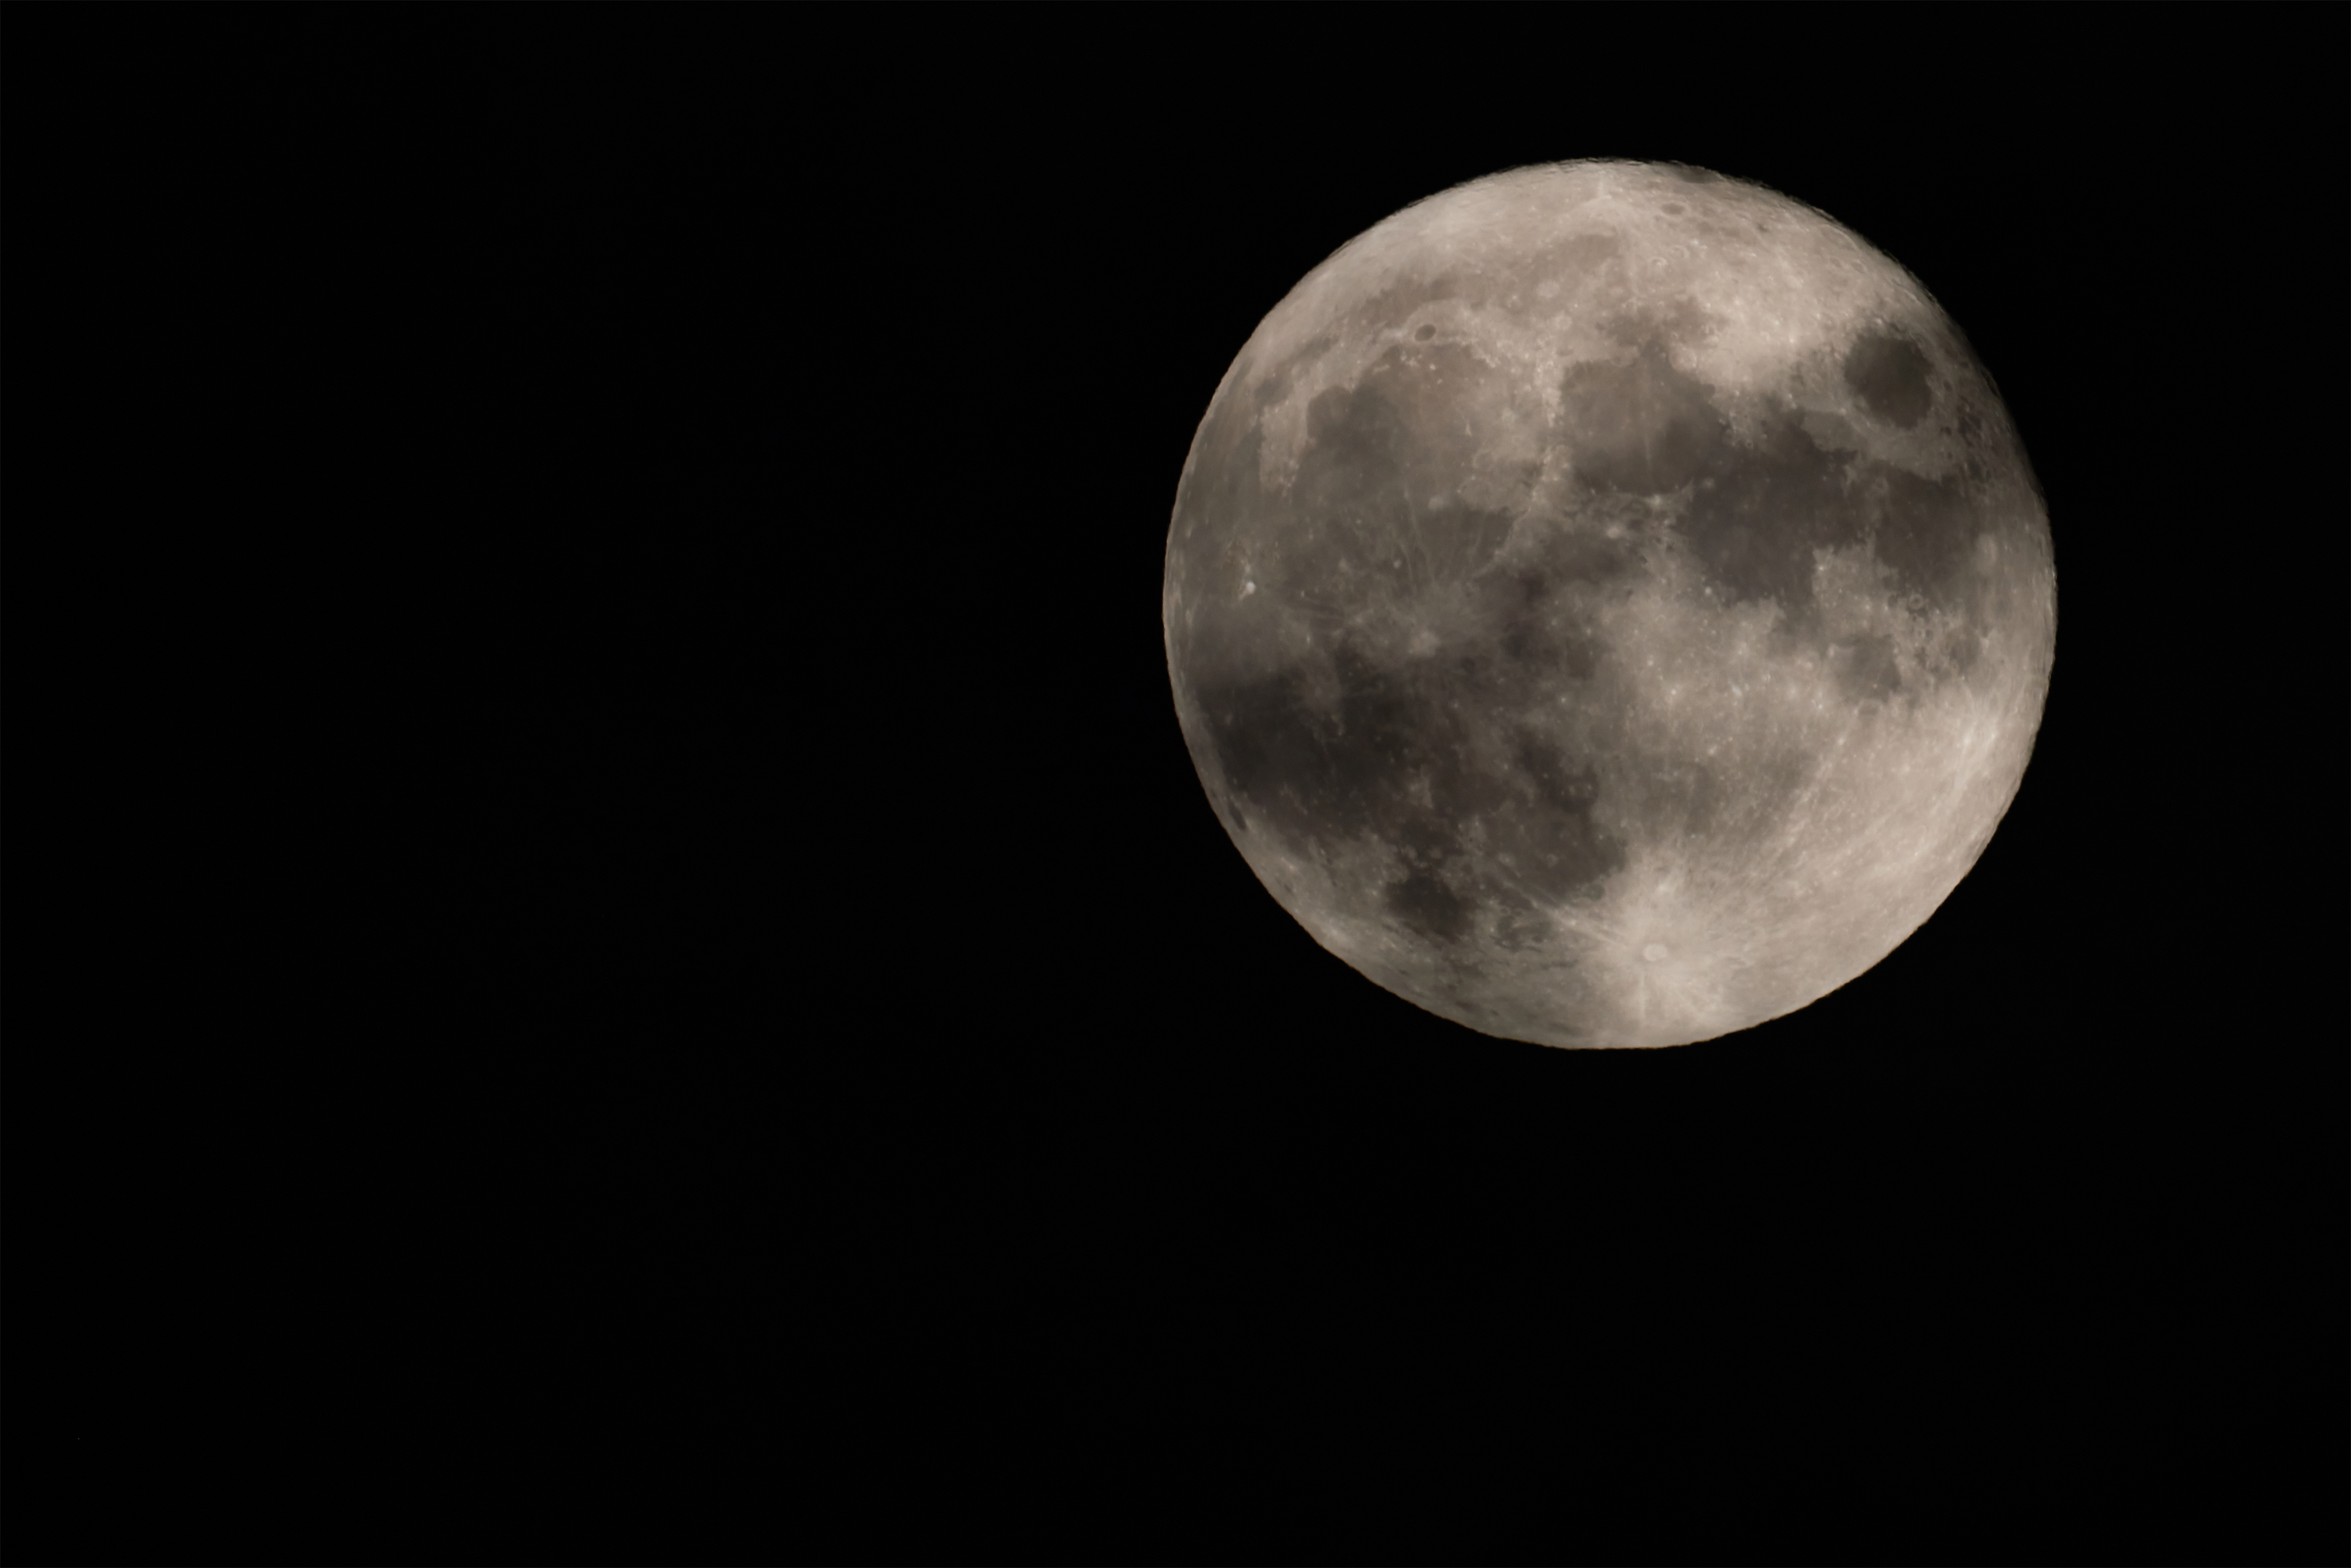 雲がかかった満月 無料の高画質フリー写真素材 イメージズラボ